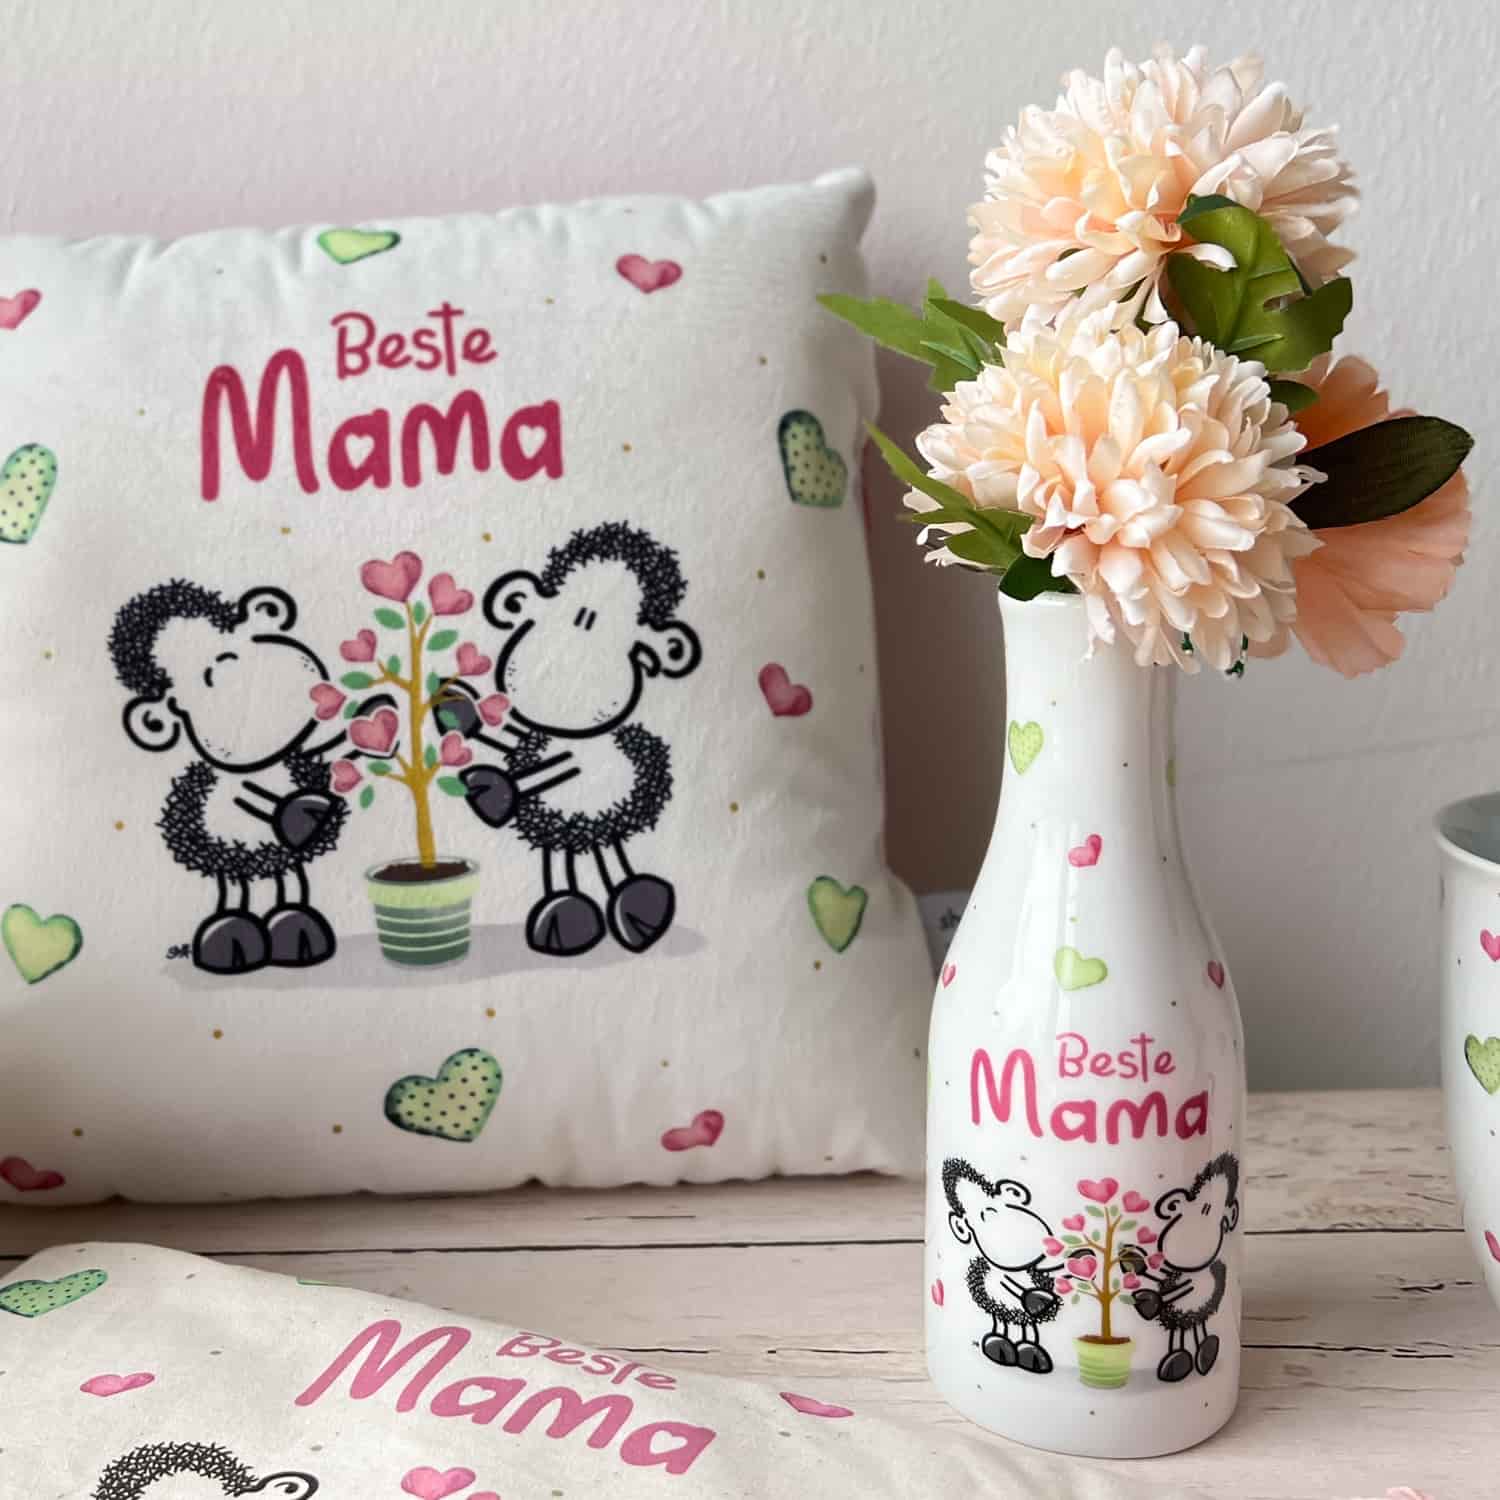 Kissen und Vase mit sheepworld Motiv und dem Spruch "Beste Mama"